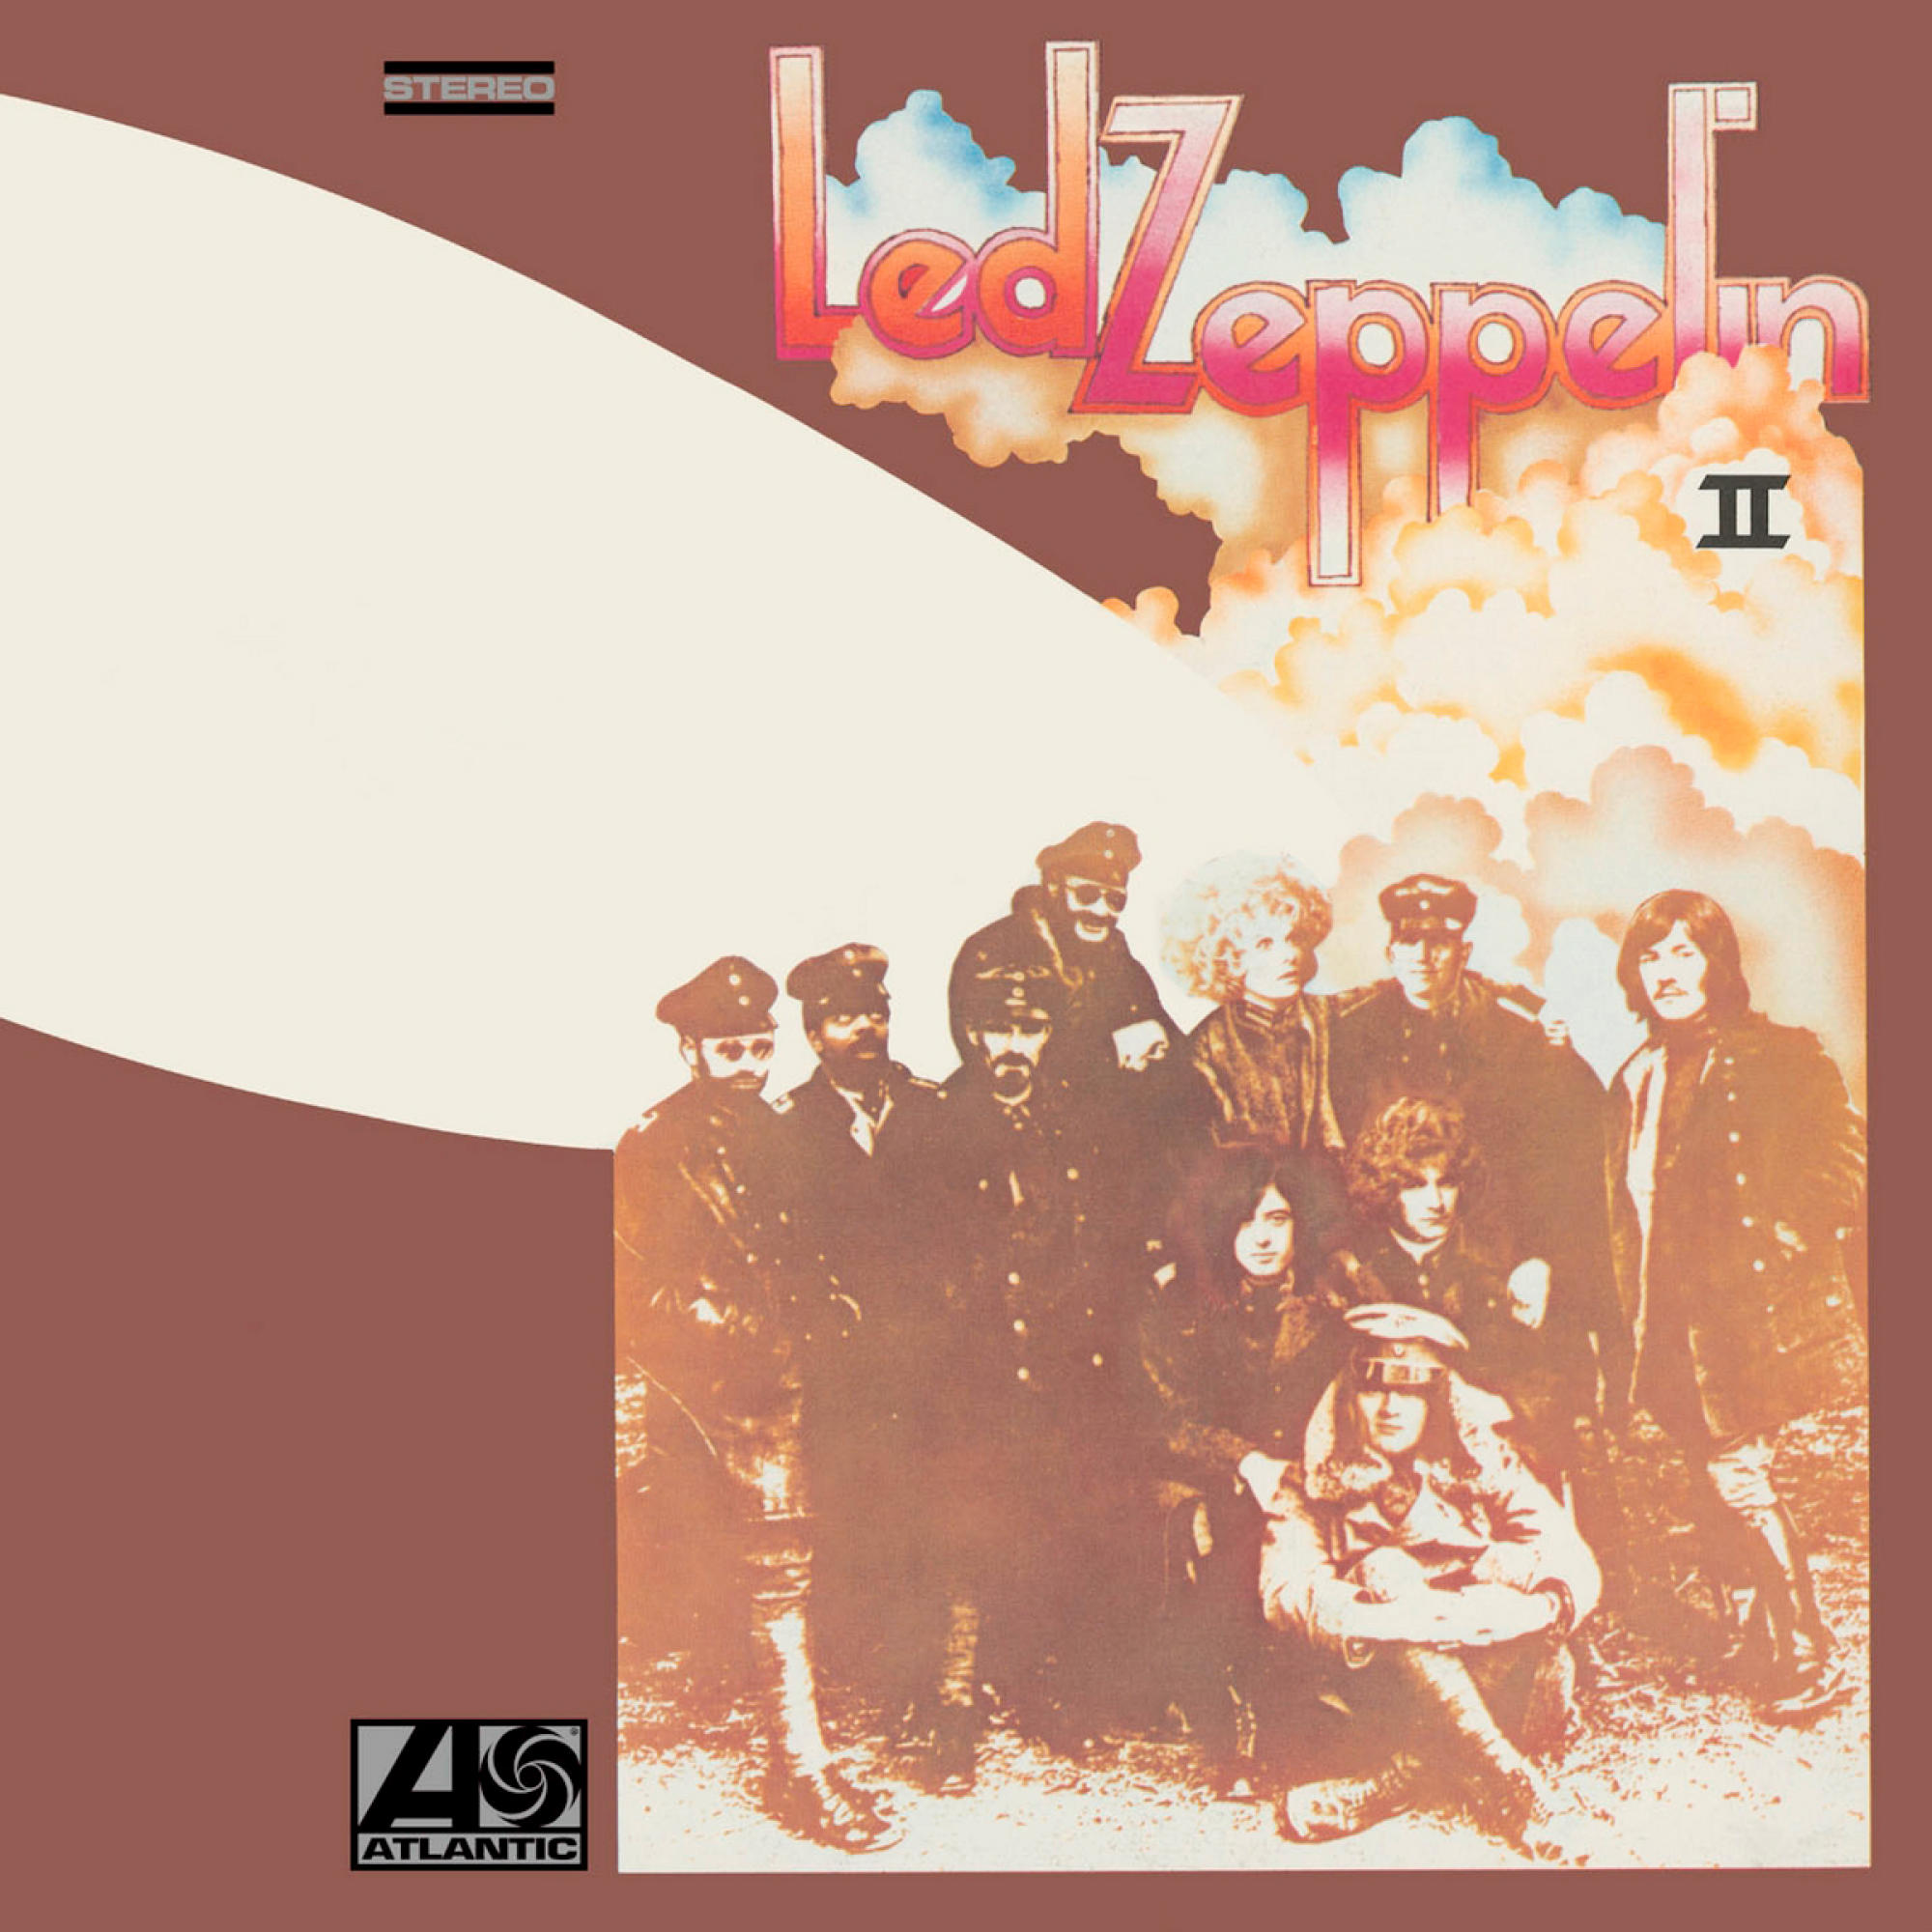 Led Zeppelin (CD) Zeppelin - II (2014 Led Reissue) 